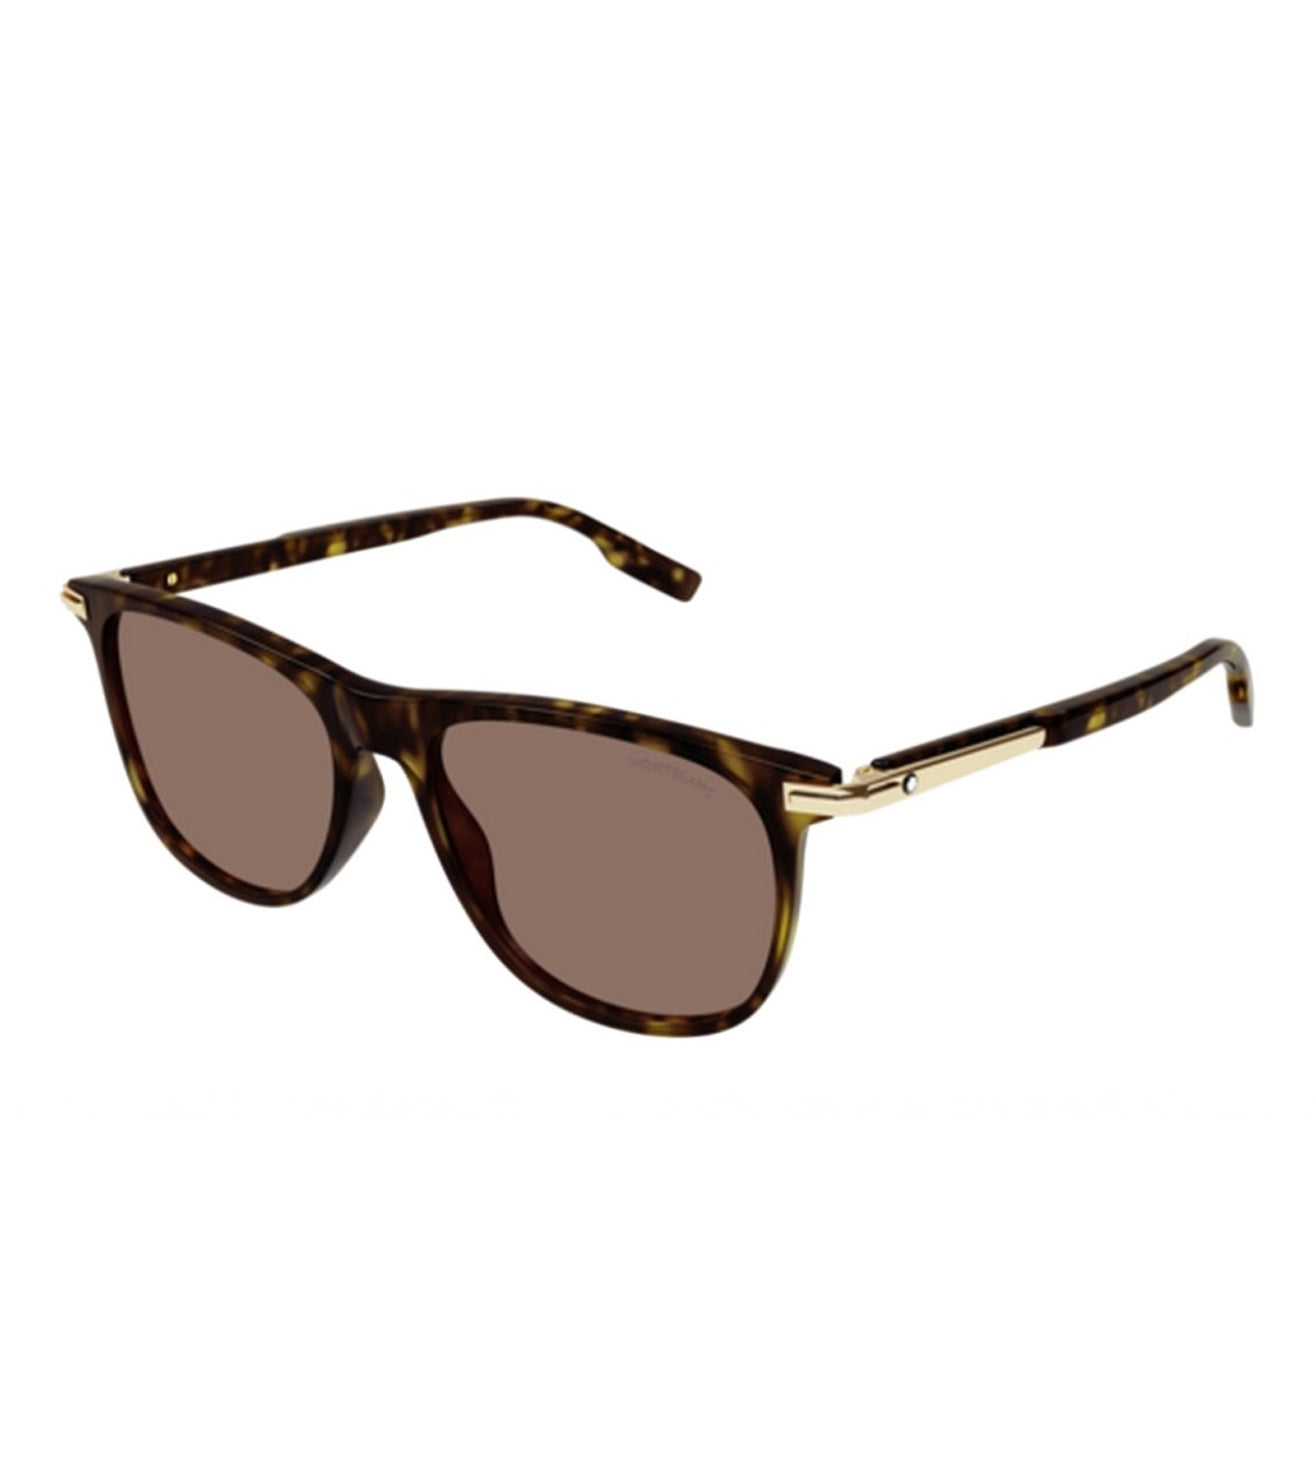 Montblanc Men's Brown Square Sunglasses